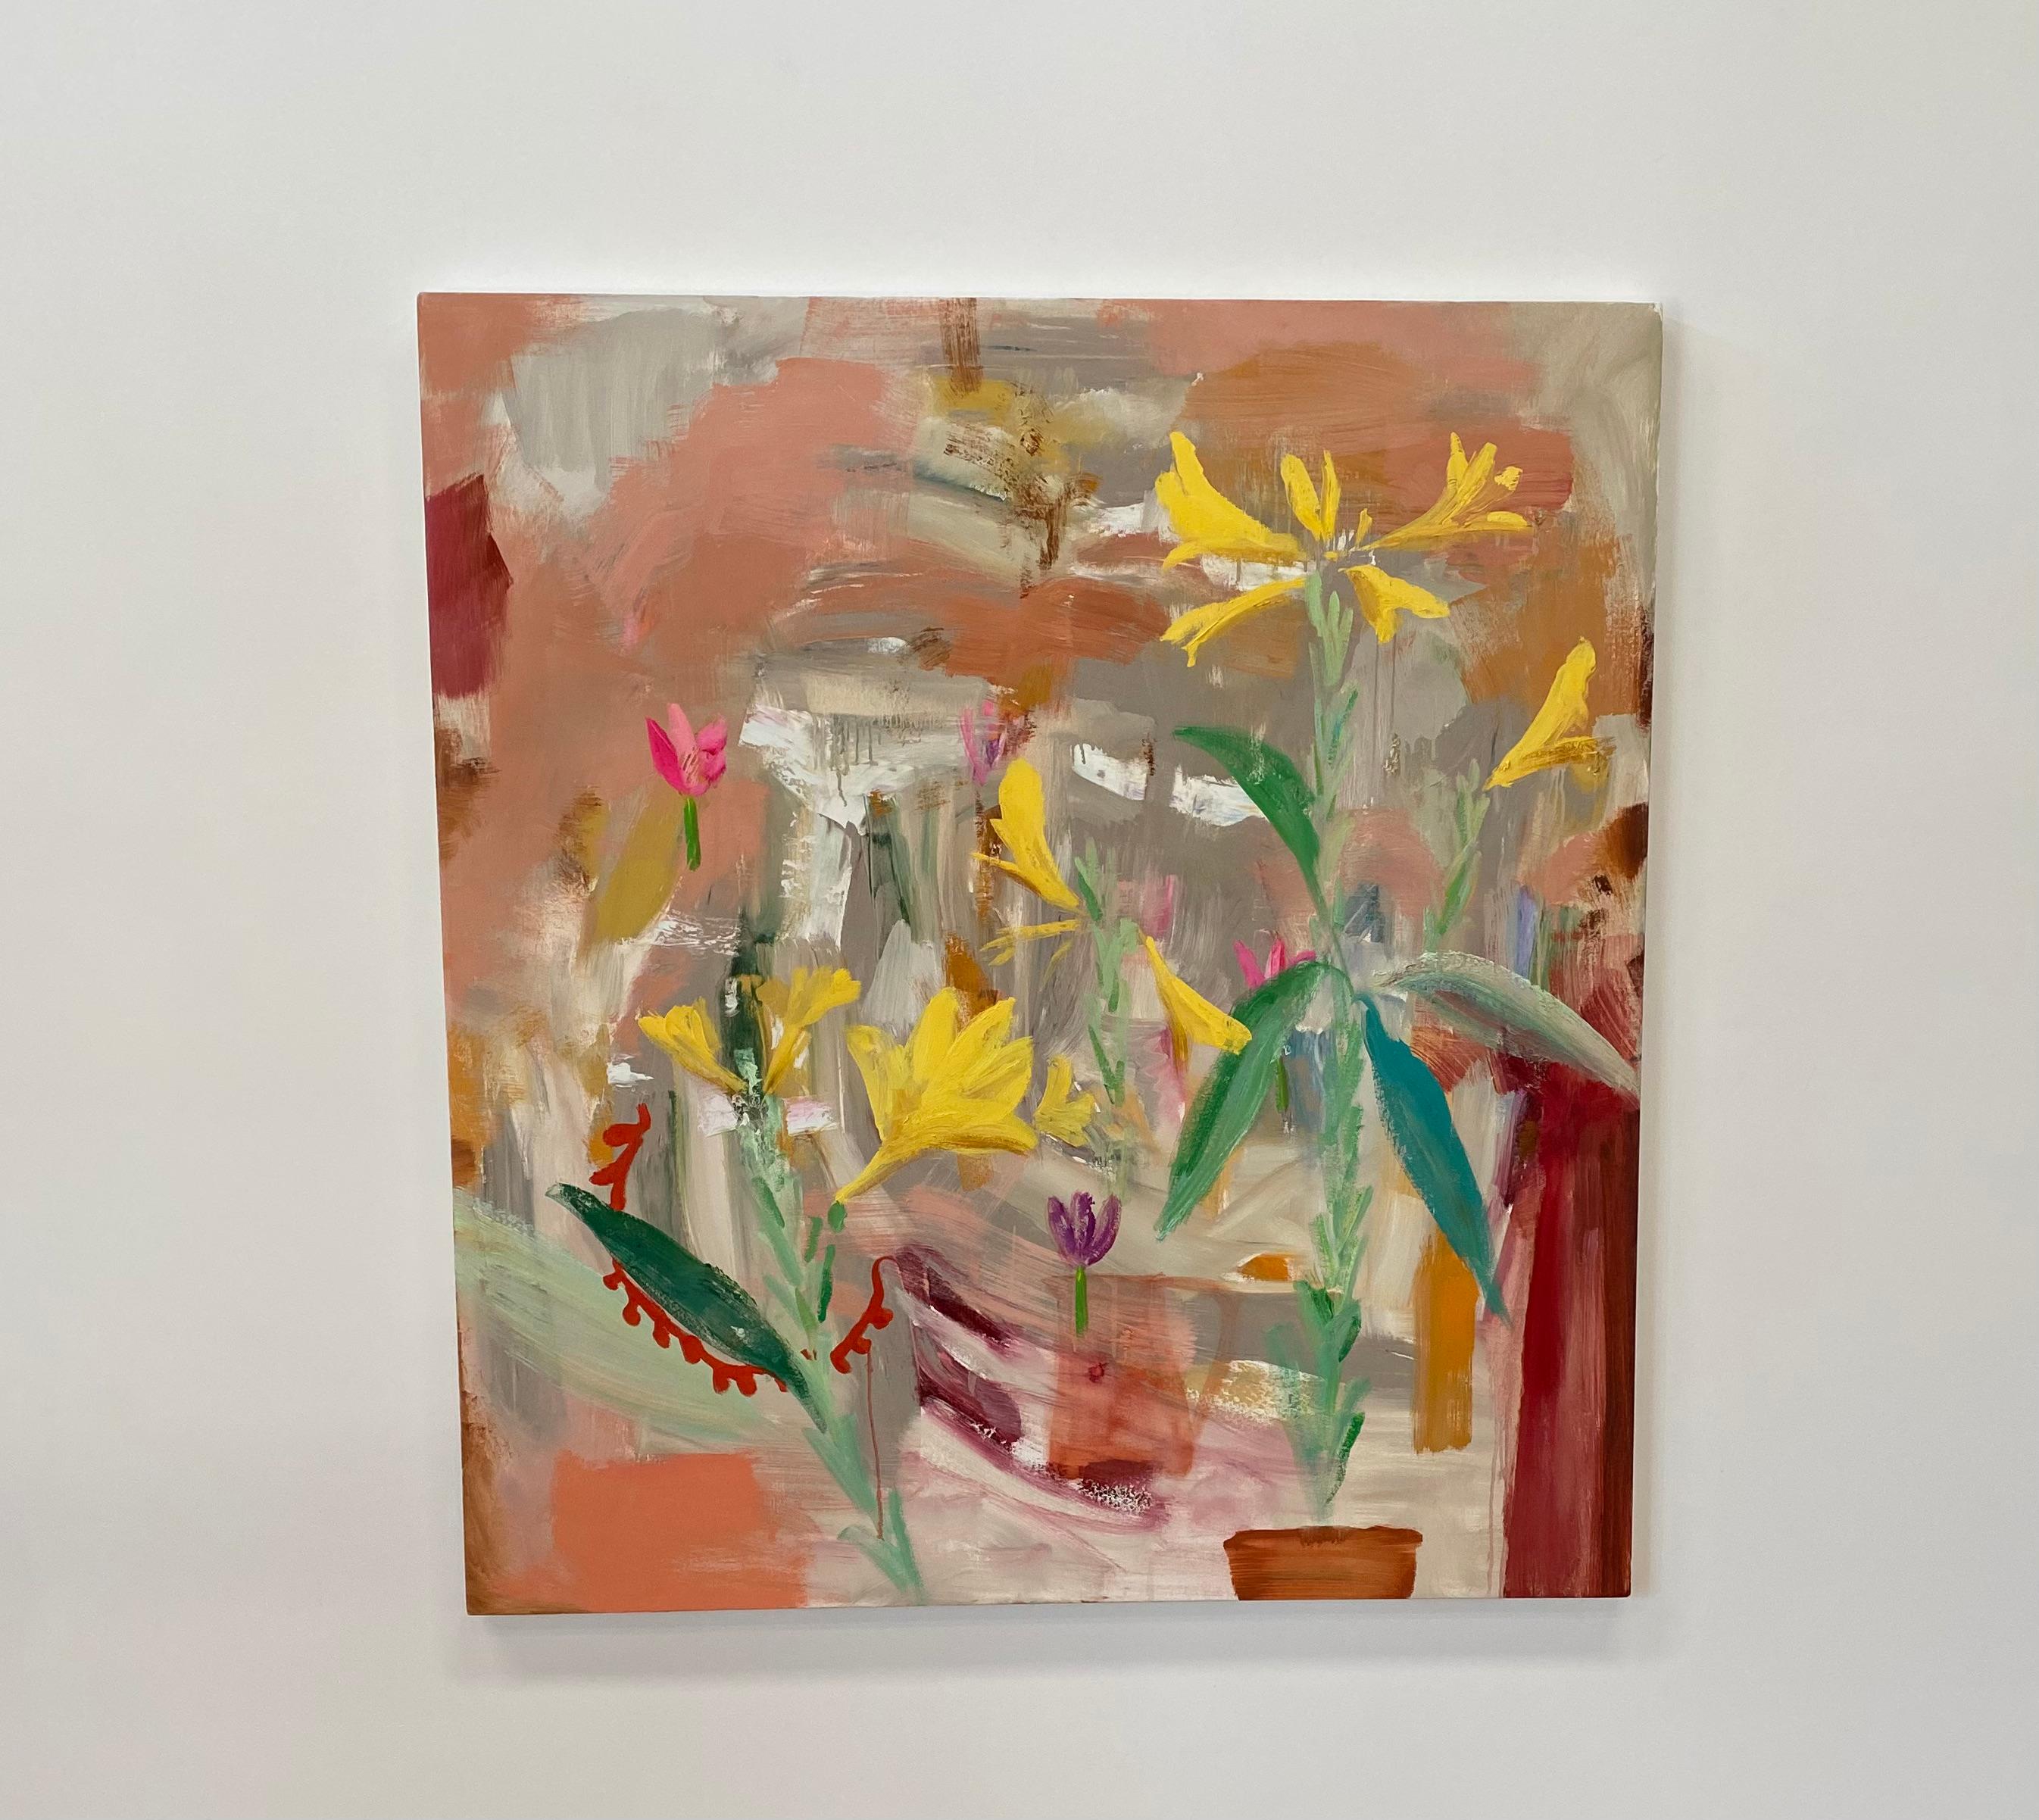 Prima Porta, fleurs de lys jaunes, verts, rouges, botanique abstraite, pêche, saumon - Painting de Melanie Parke